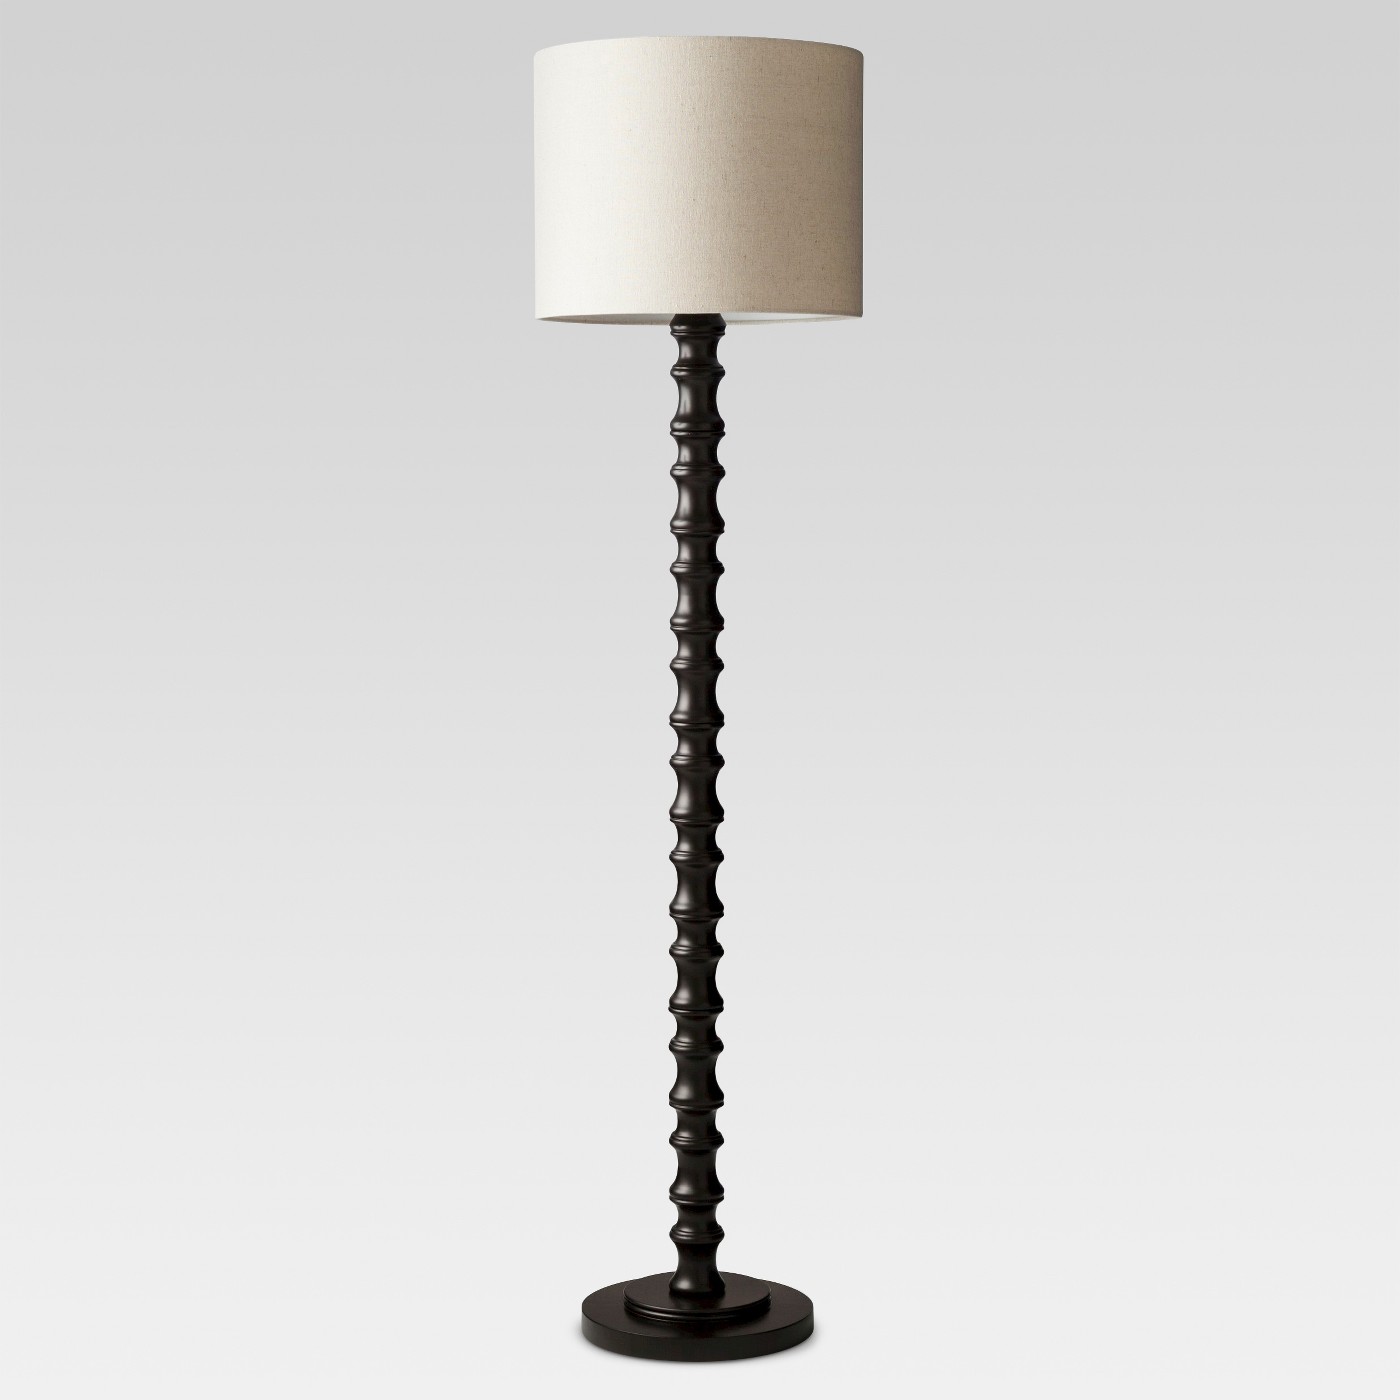 Black Floor Lamp Target   Provident Home Design